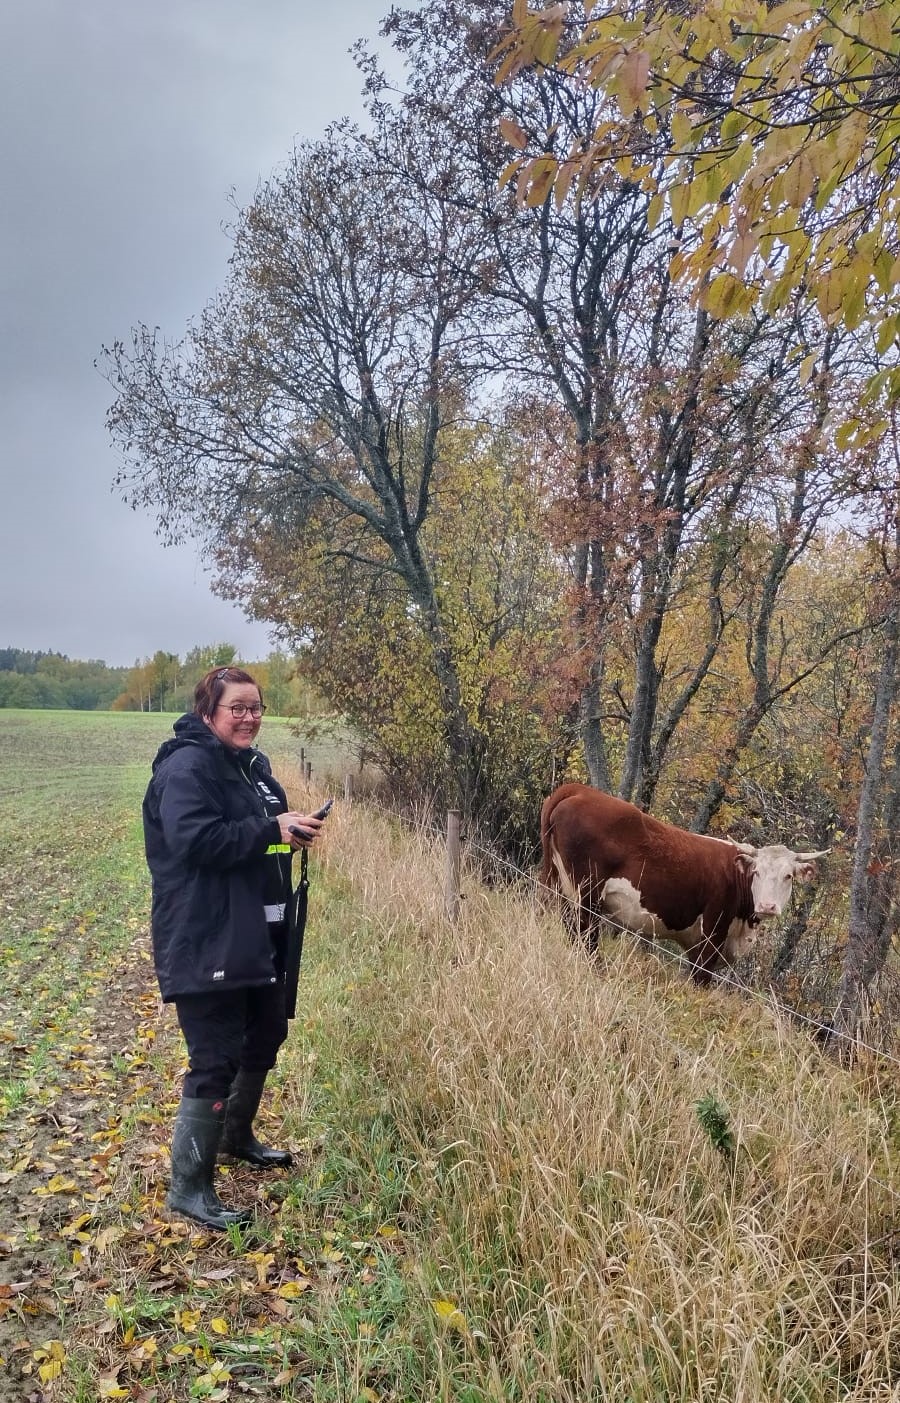 Syksyinen pellonreuna, etualalla seisoo nainen tummassa takissa, taaempana lehmä katselee naista.